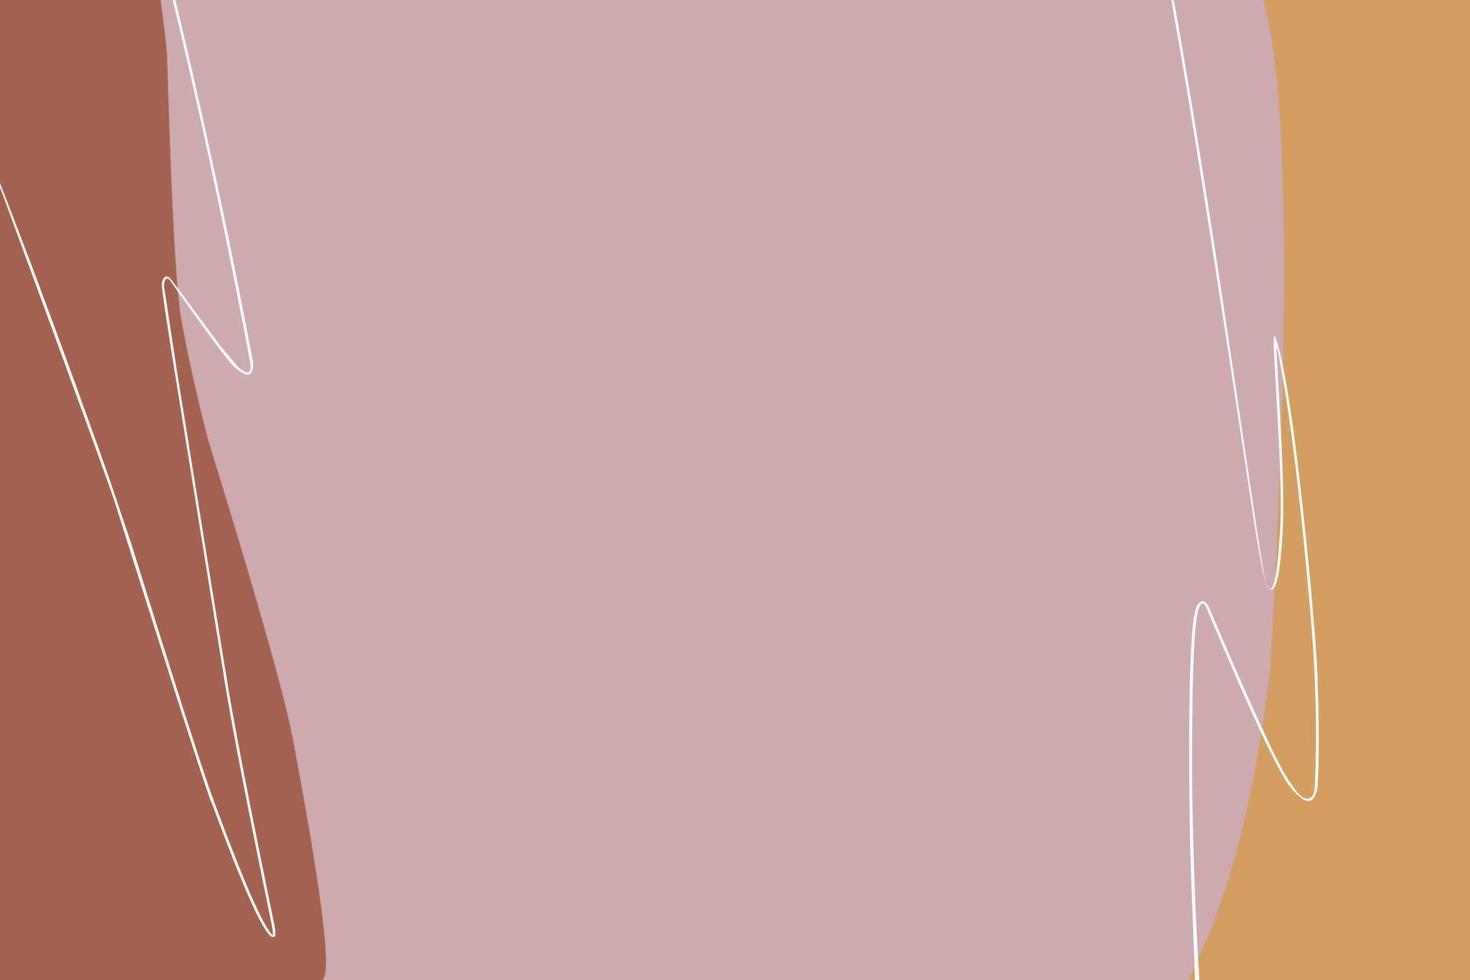 modelos elegantes com formas abstratas orgânicas e linhas em cores nude. fundo pastel em estilo minimalista. ilustração vetorial contemporânea vetor